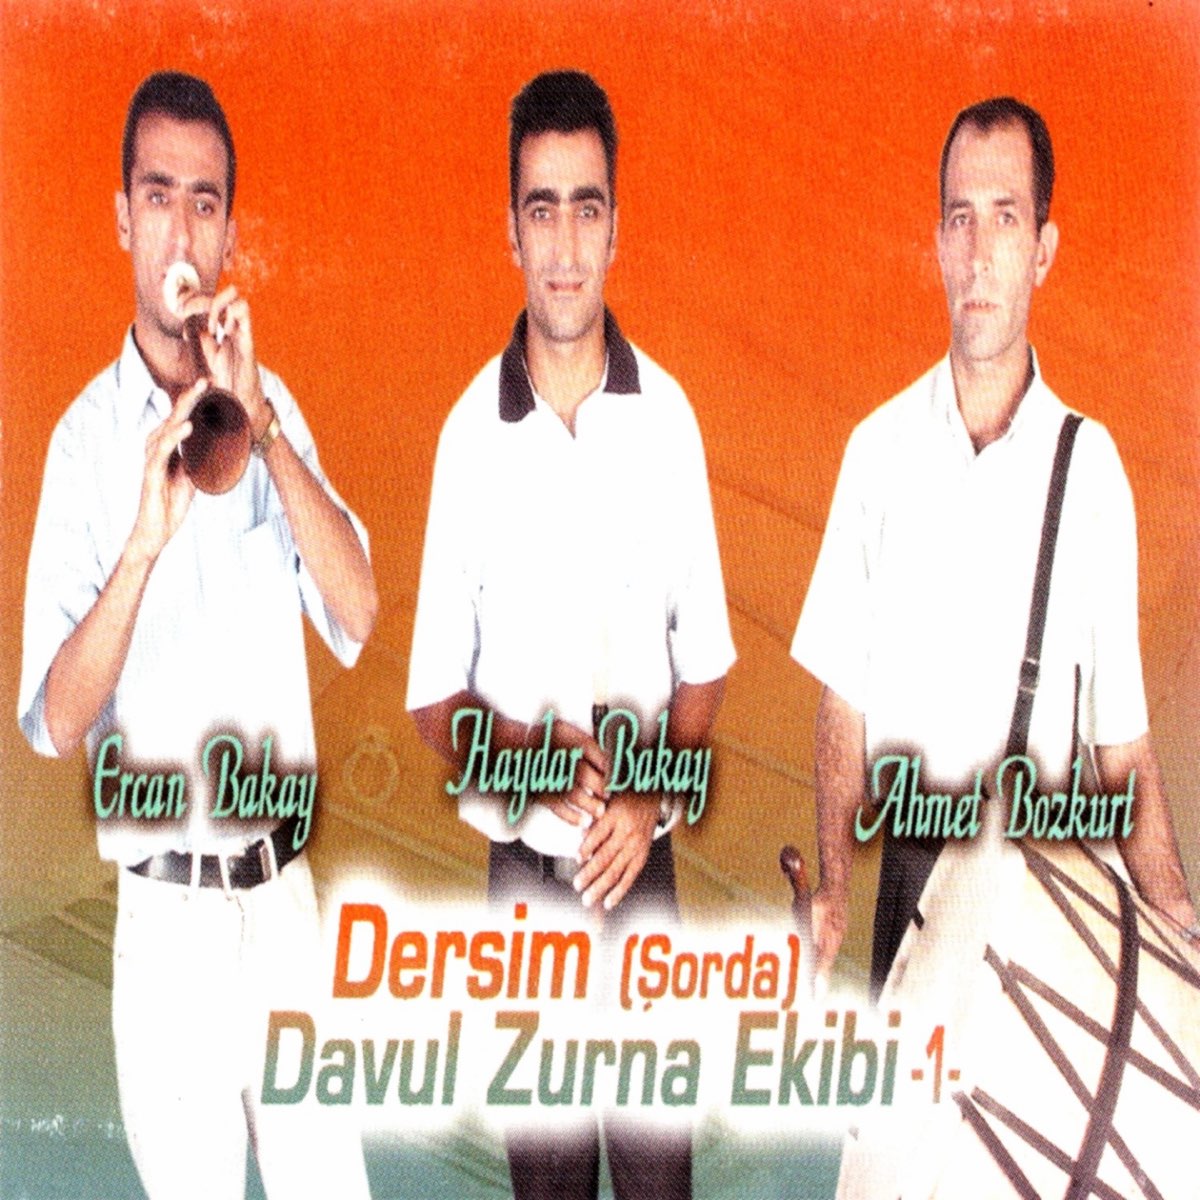 Dersim Davul Zurna Ekibi, Vol. 1 (Şorda) by Haydar Bakay, Ercan Bakay &  Ahmet Bozkurt on Apple Music